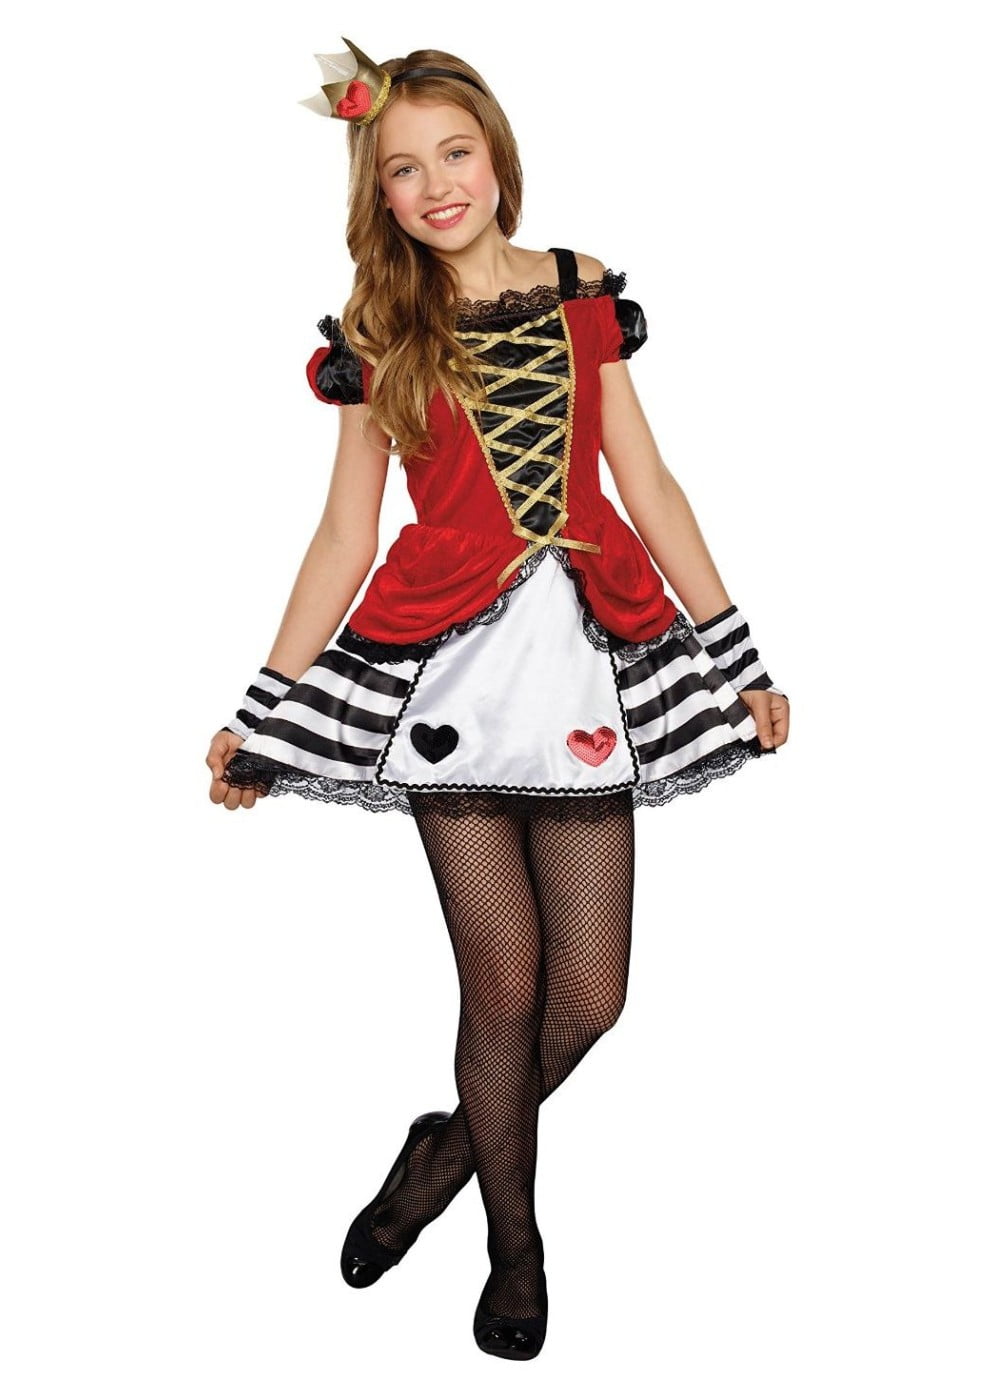 Queen of Heart Girls Tween Costume - Walmart.com